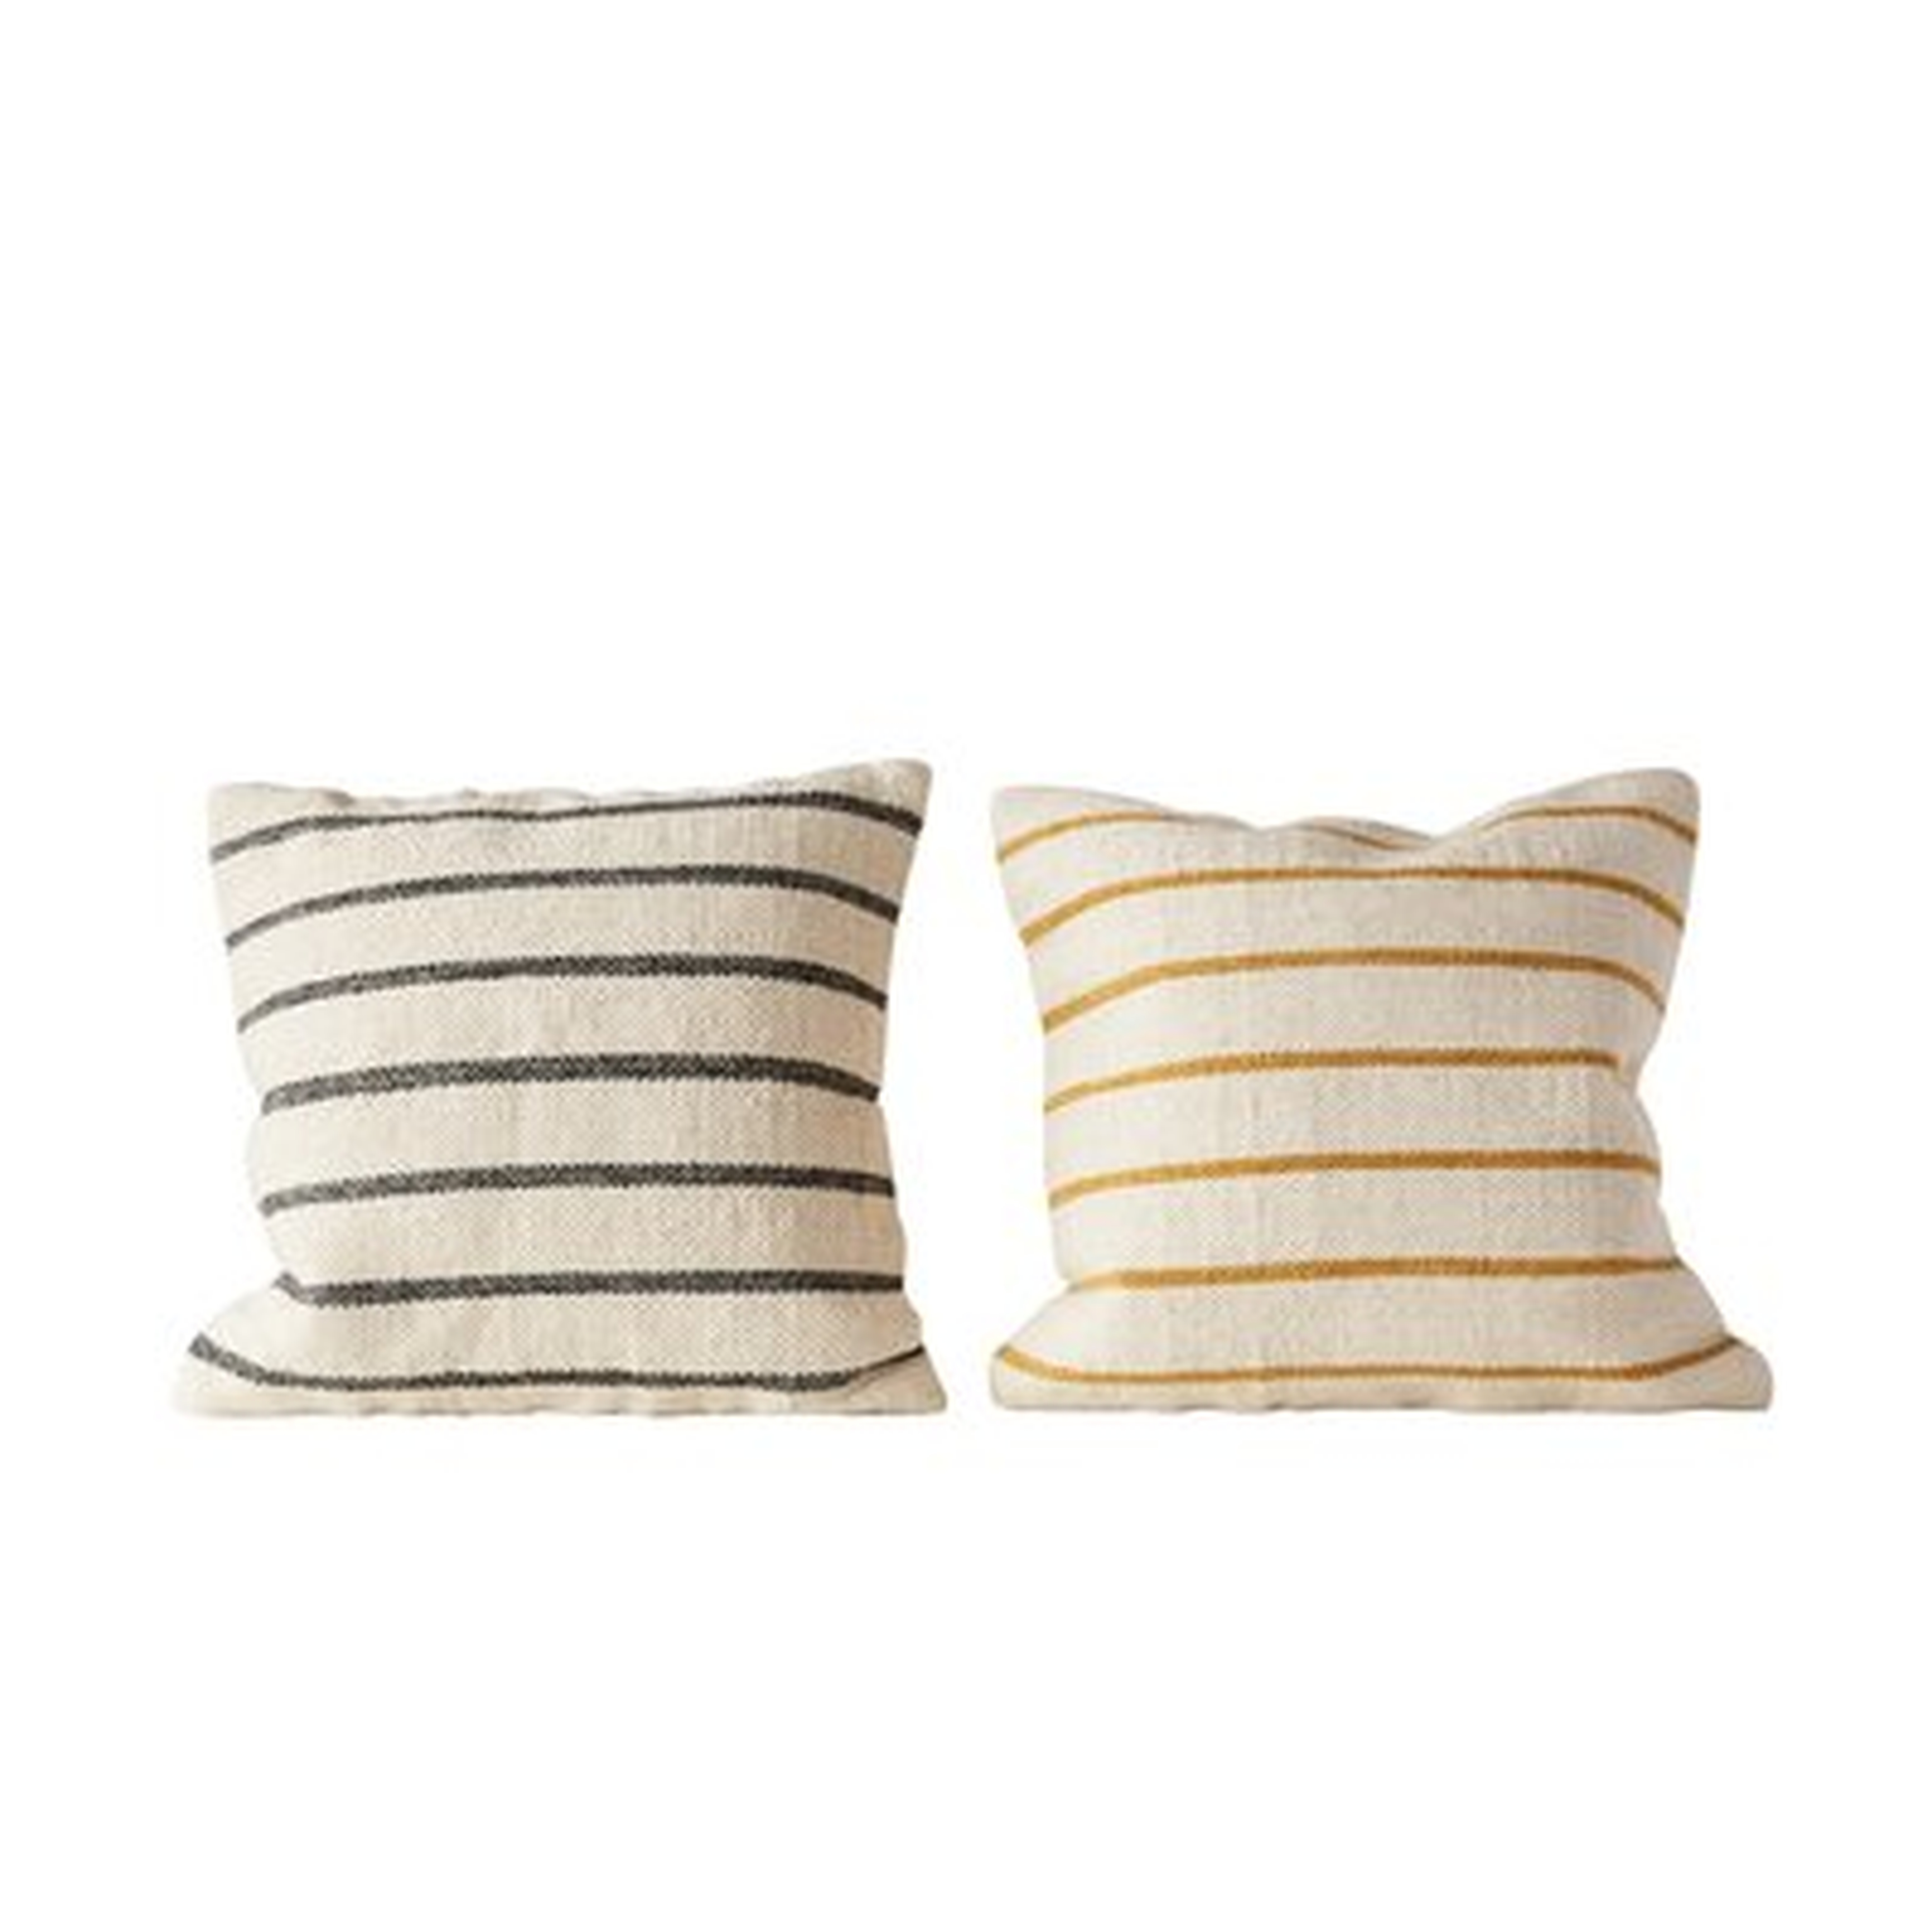 Balic Striped Wool Throw Pillow - Birch Lane